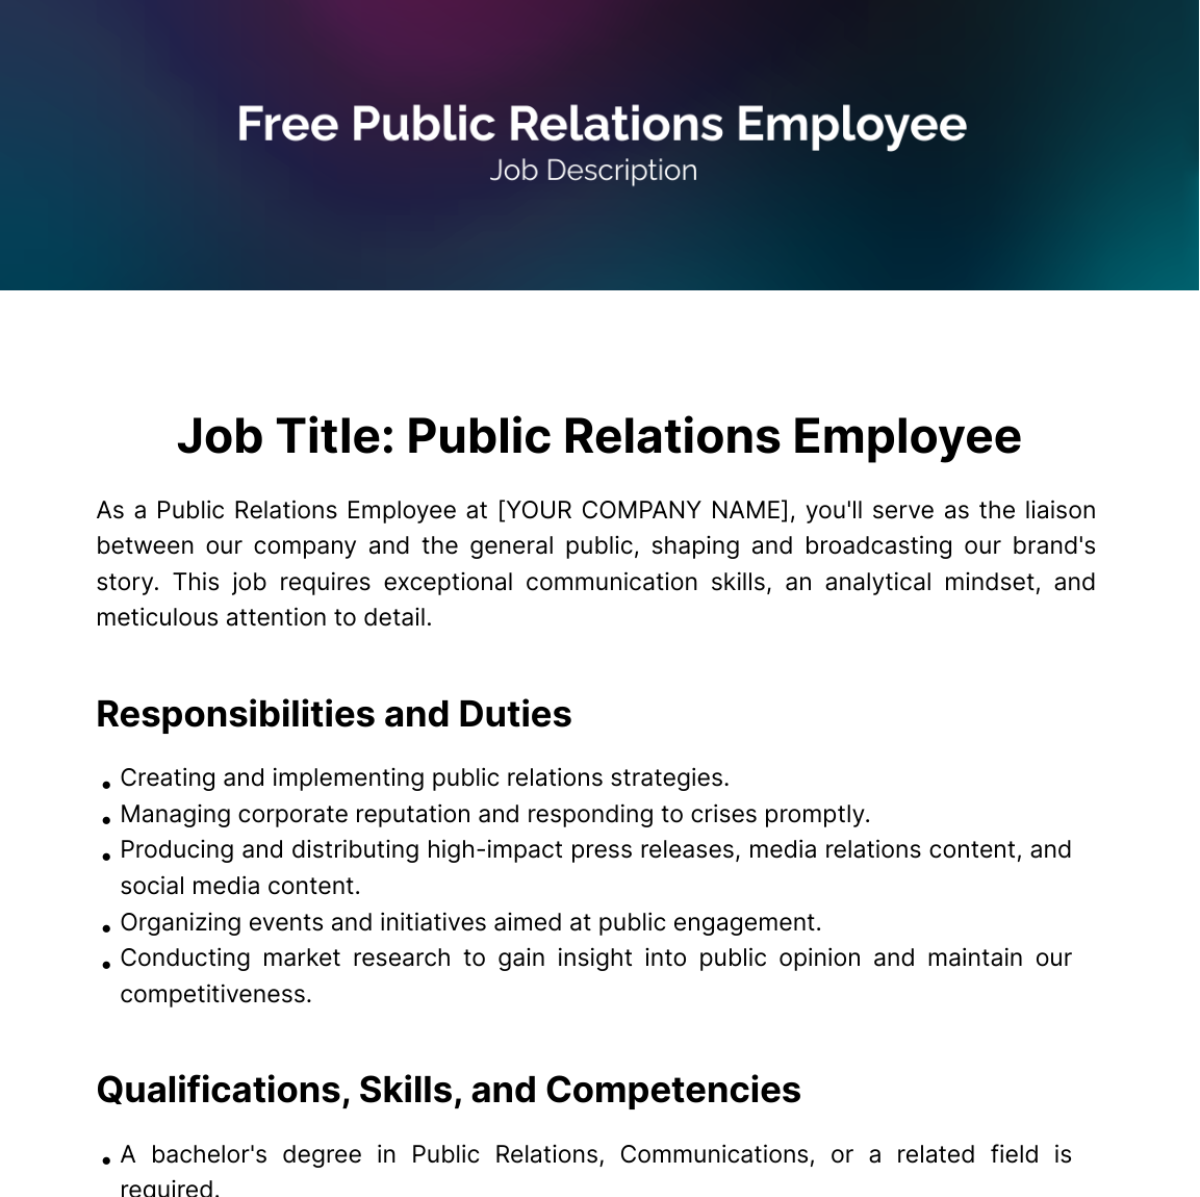 Public Relations (PR) Employee Job Description Template